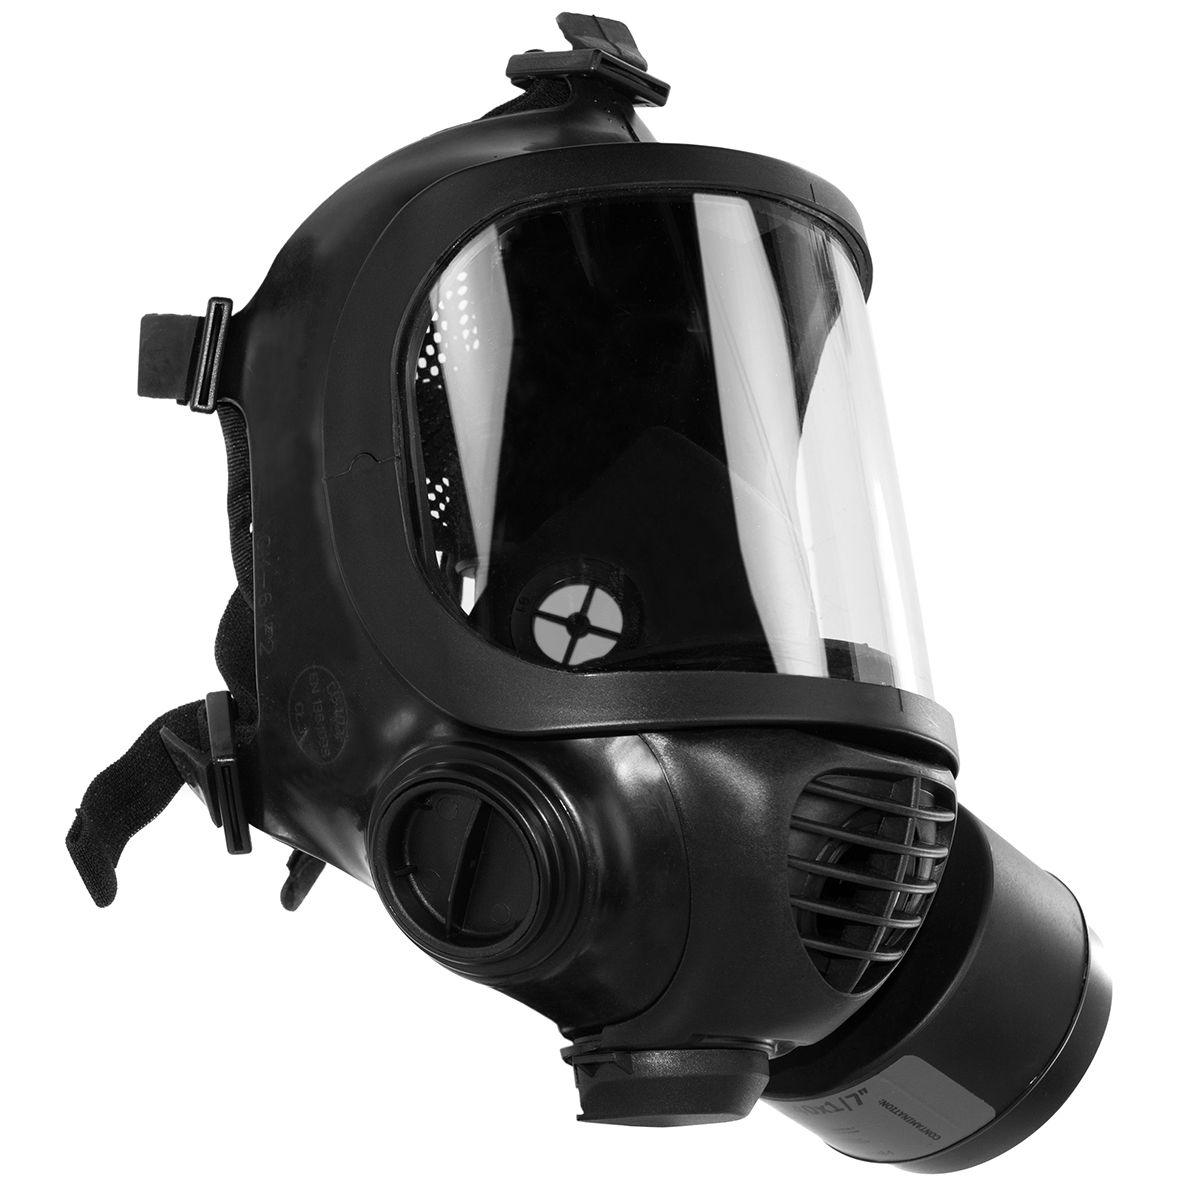 ACE Calypso CM-6 Vollmaske - Atemschutz-Maske für Arbeit & Notfall - Rd40-Anschluss für zwei Filter